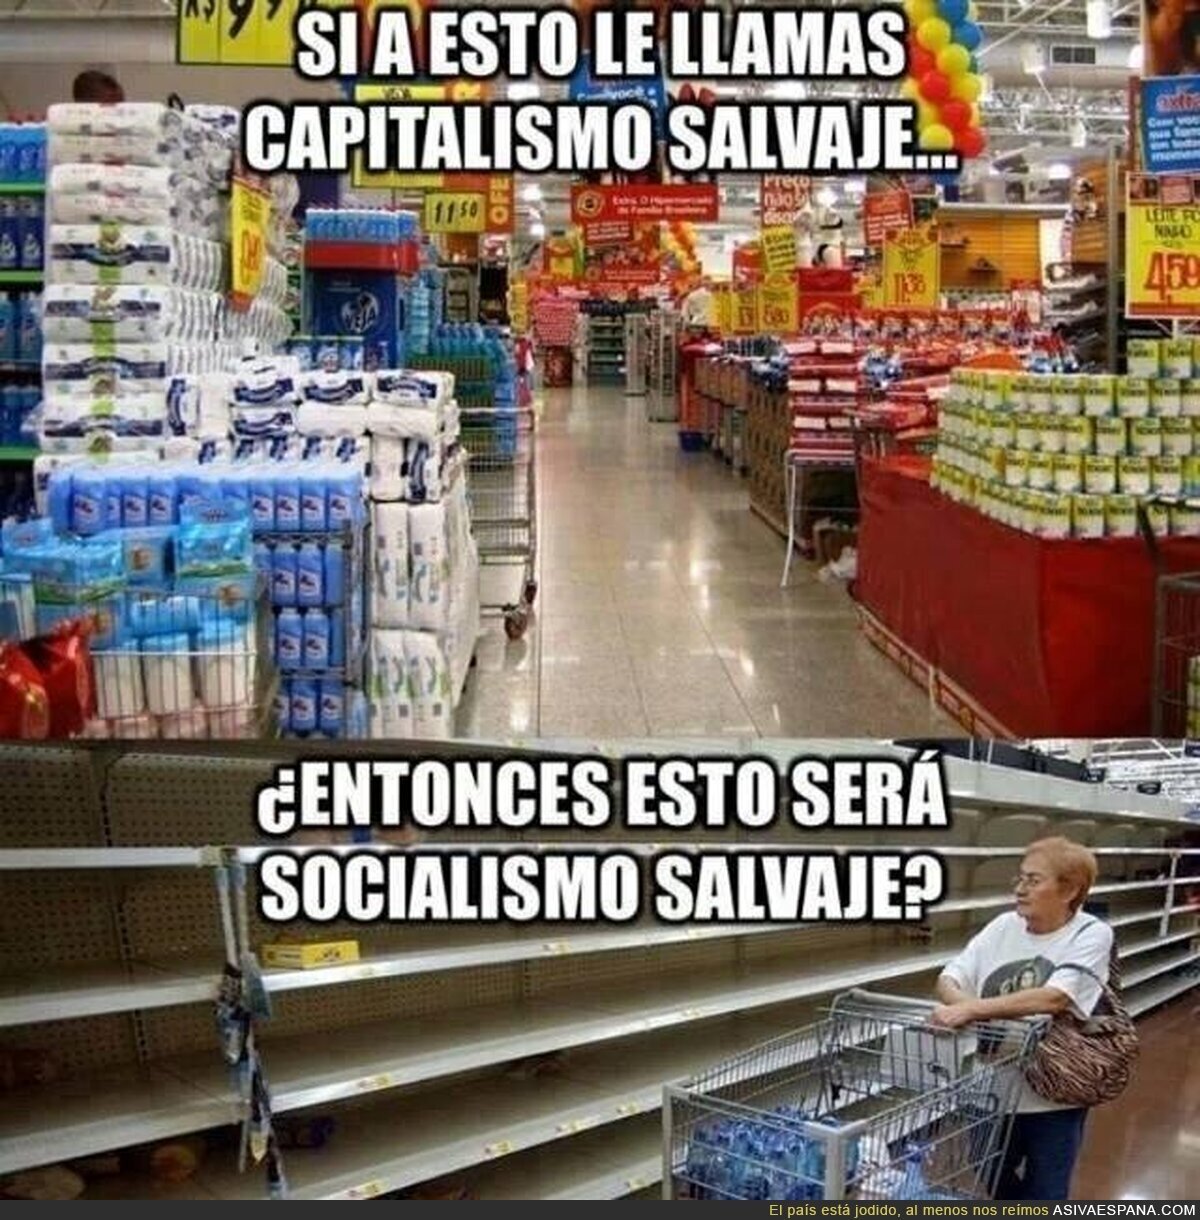 Capitalismo salvaje vs Socialismo salvaje